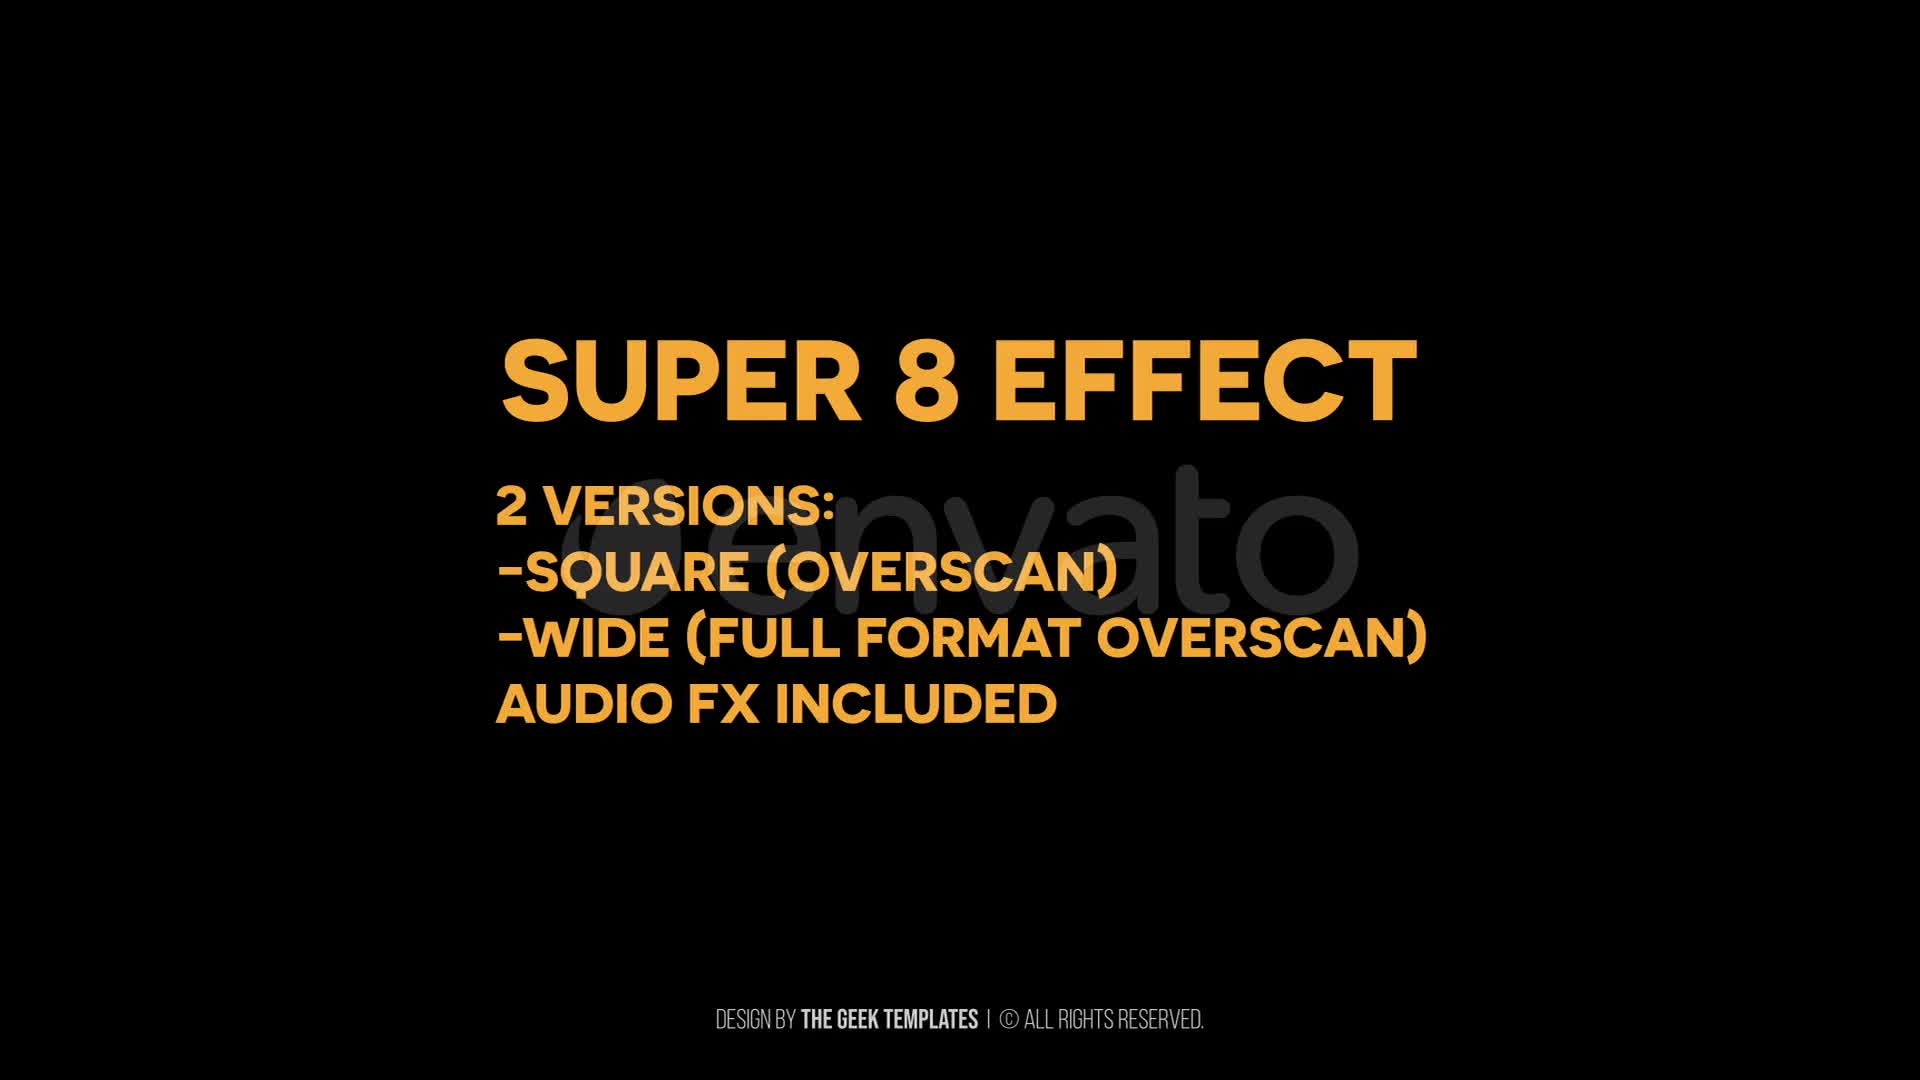 Super 8 Effect I Premiere Videohive 37333709 Premiere Pro Image 1